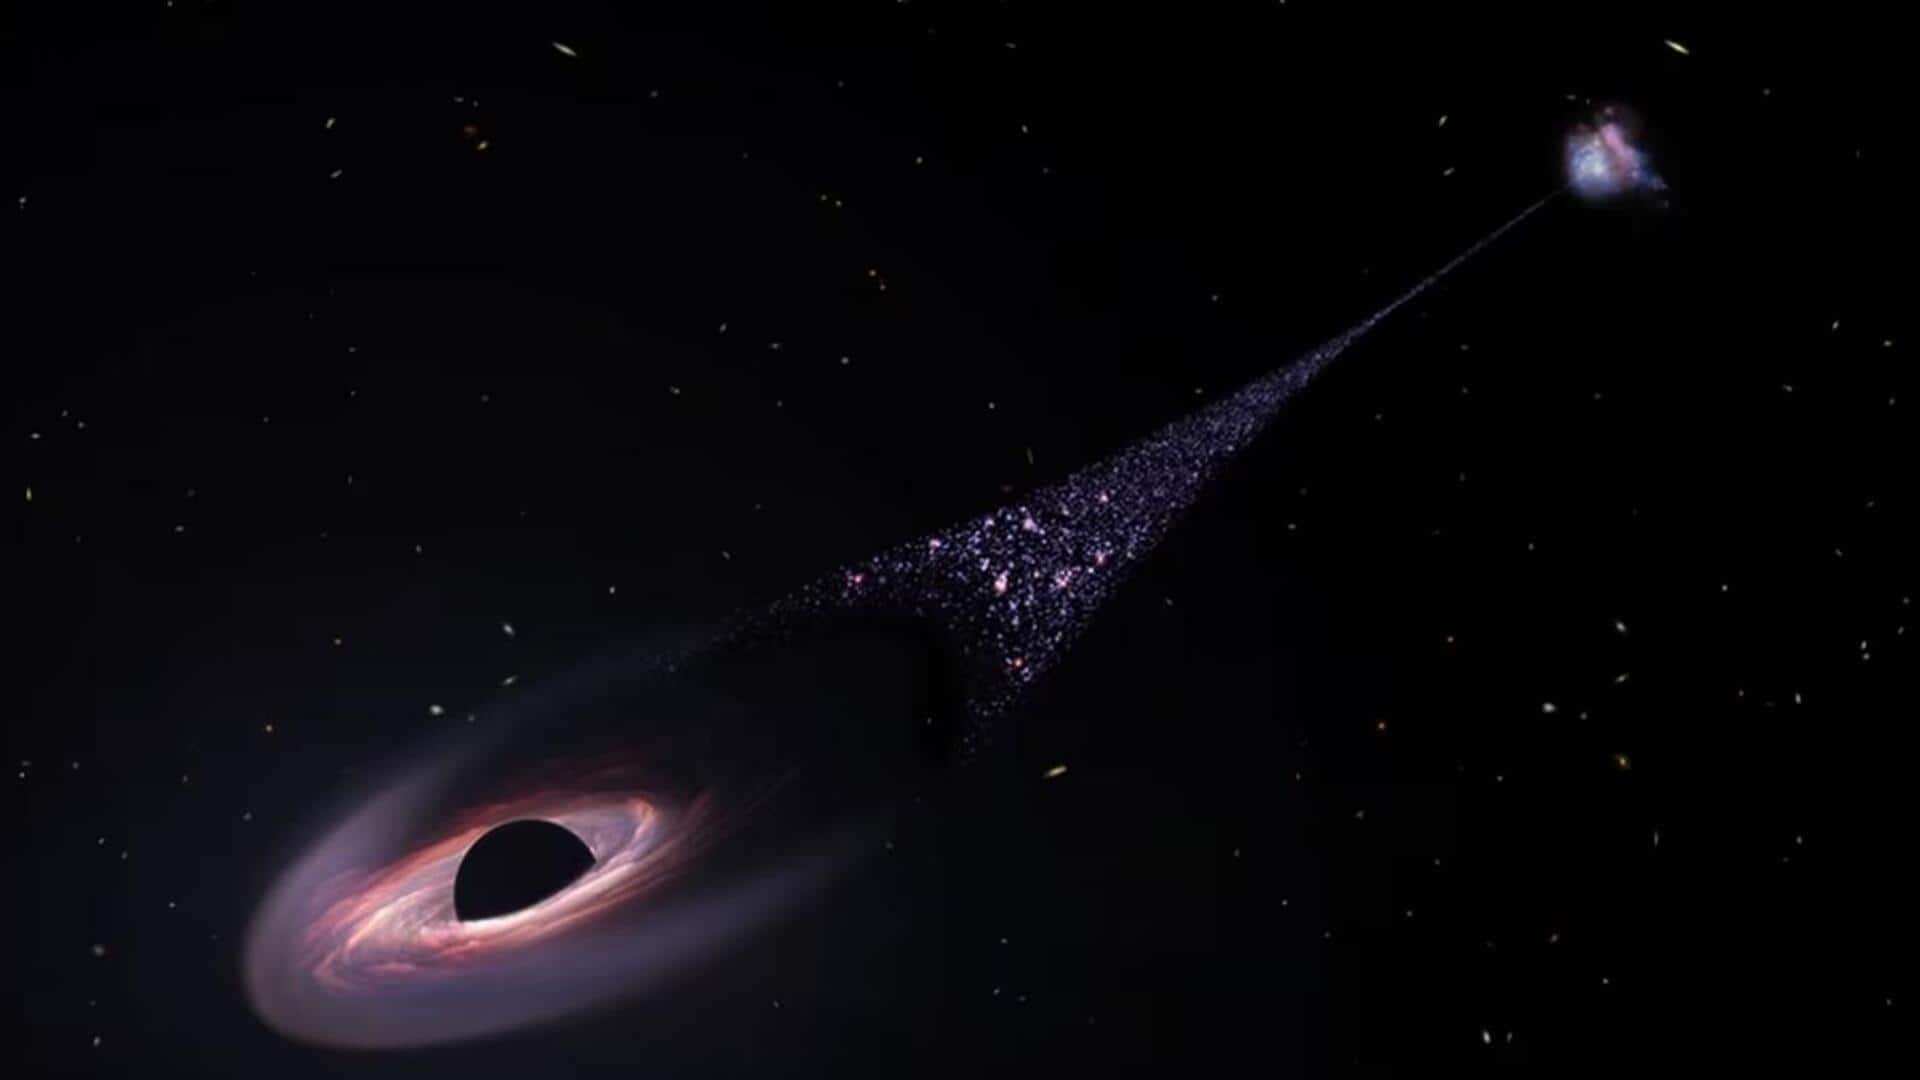 नासा के हबल स्पेस टेलीस्कोप ने सुपरमैसिव ब्लैक होल का लगाया पता